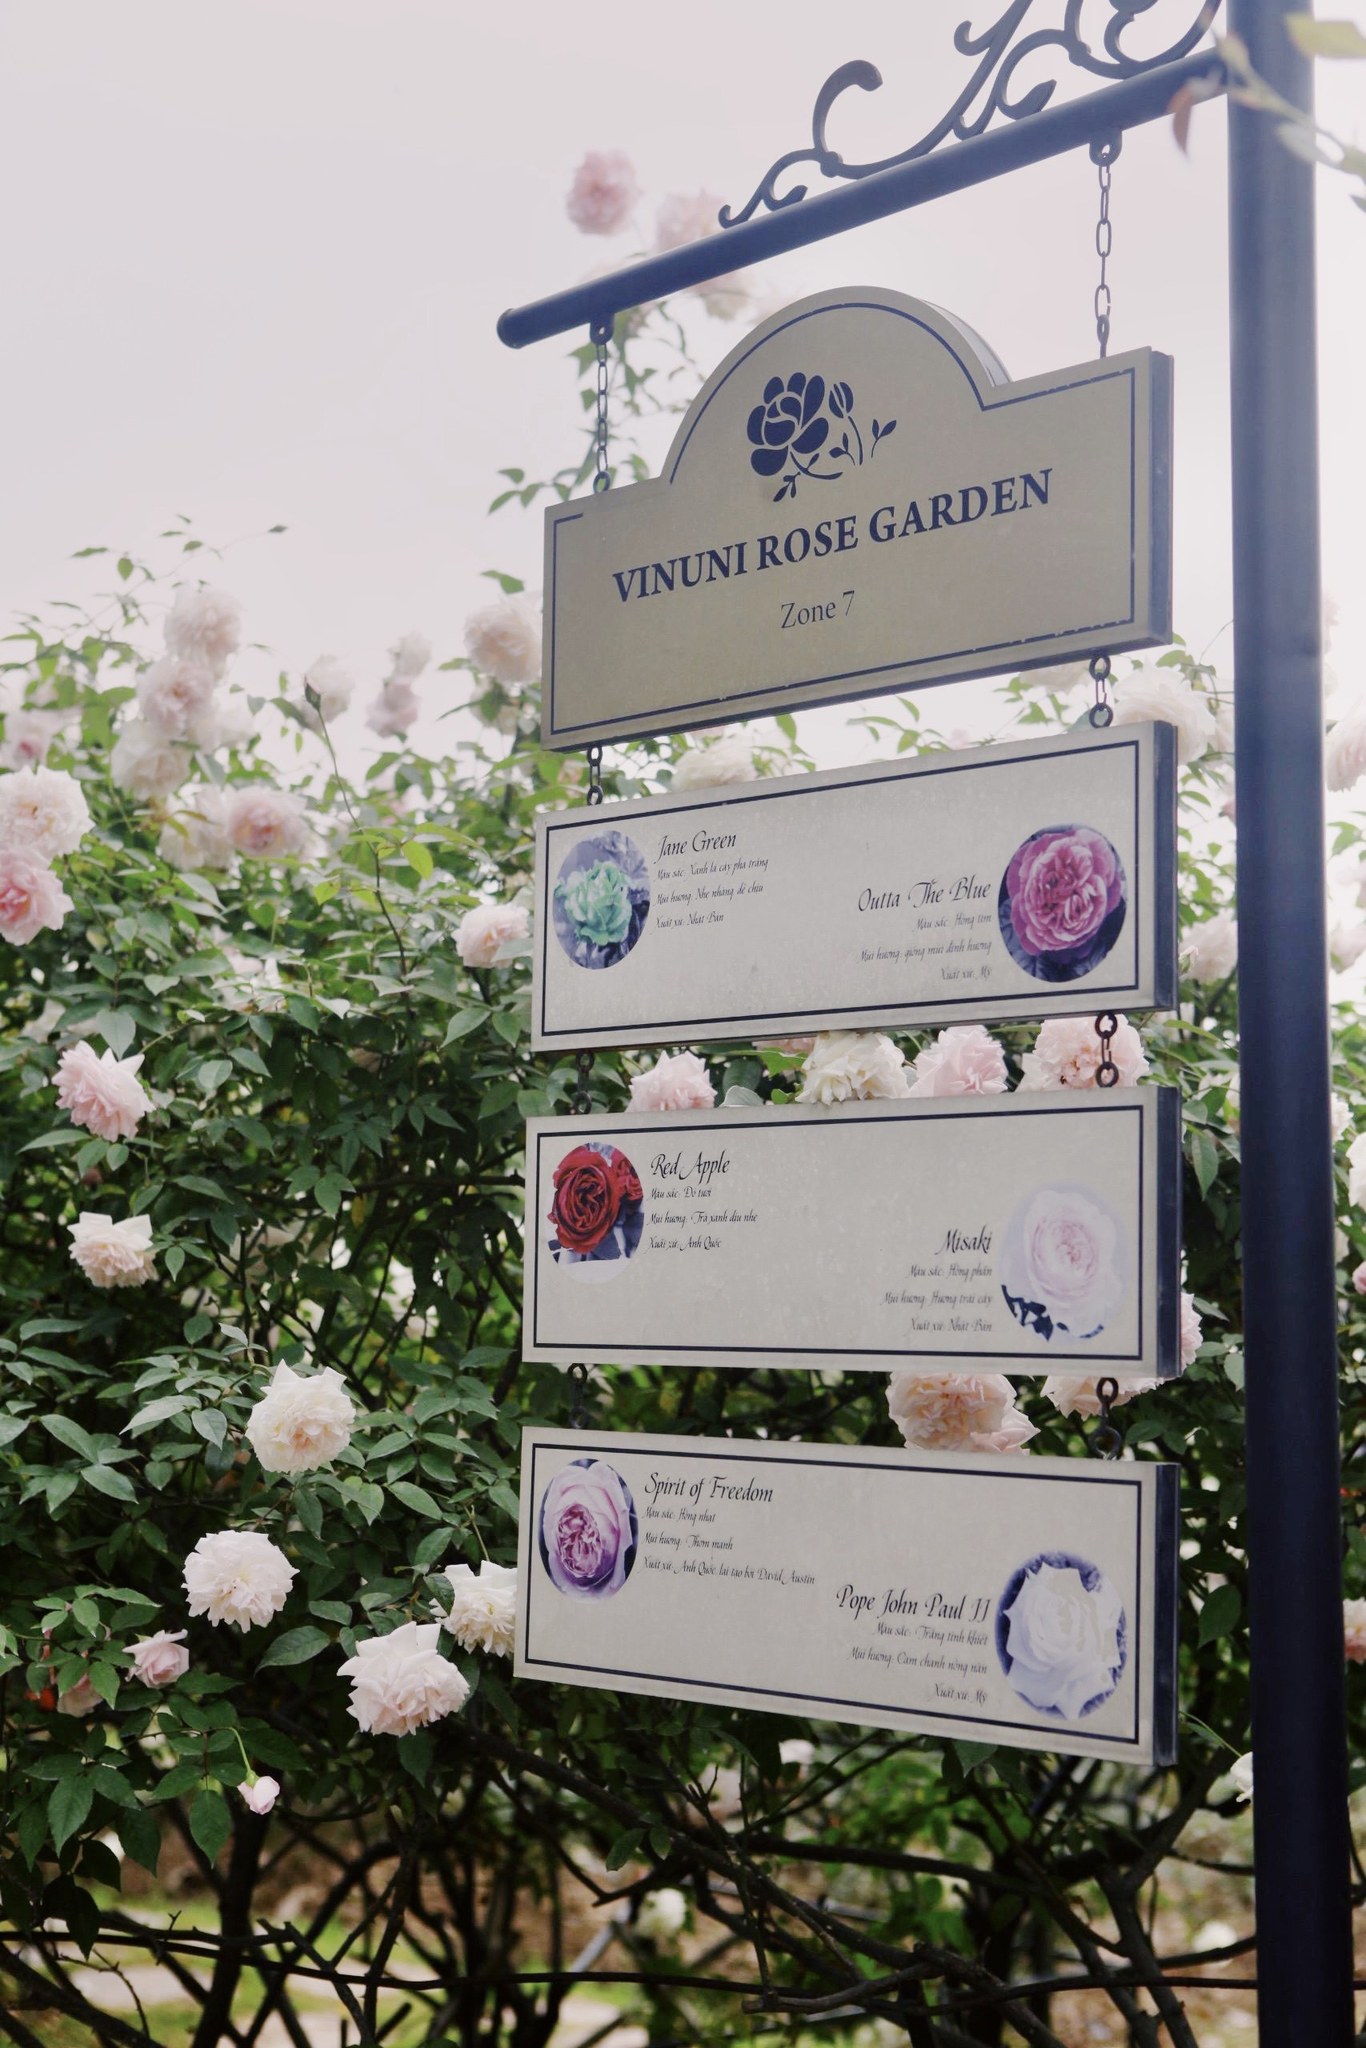 Trường đại học gây sốt với vườn hồng hàng trăm loại đẹp như cổ tích: Chỉ ngắm thôi cũng đã đầy cảm hứng học tập- Ảnh 12.